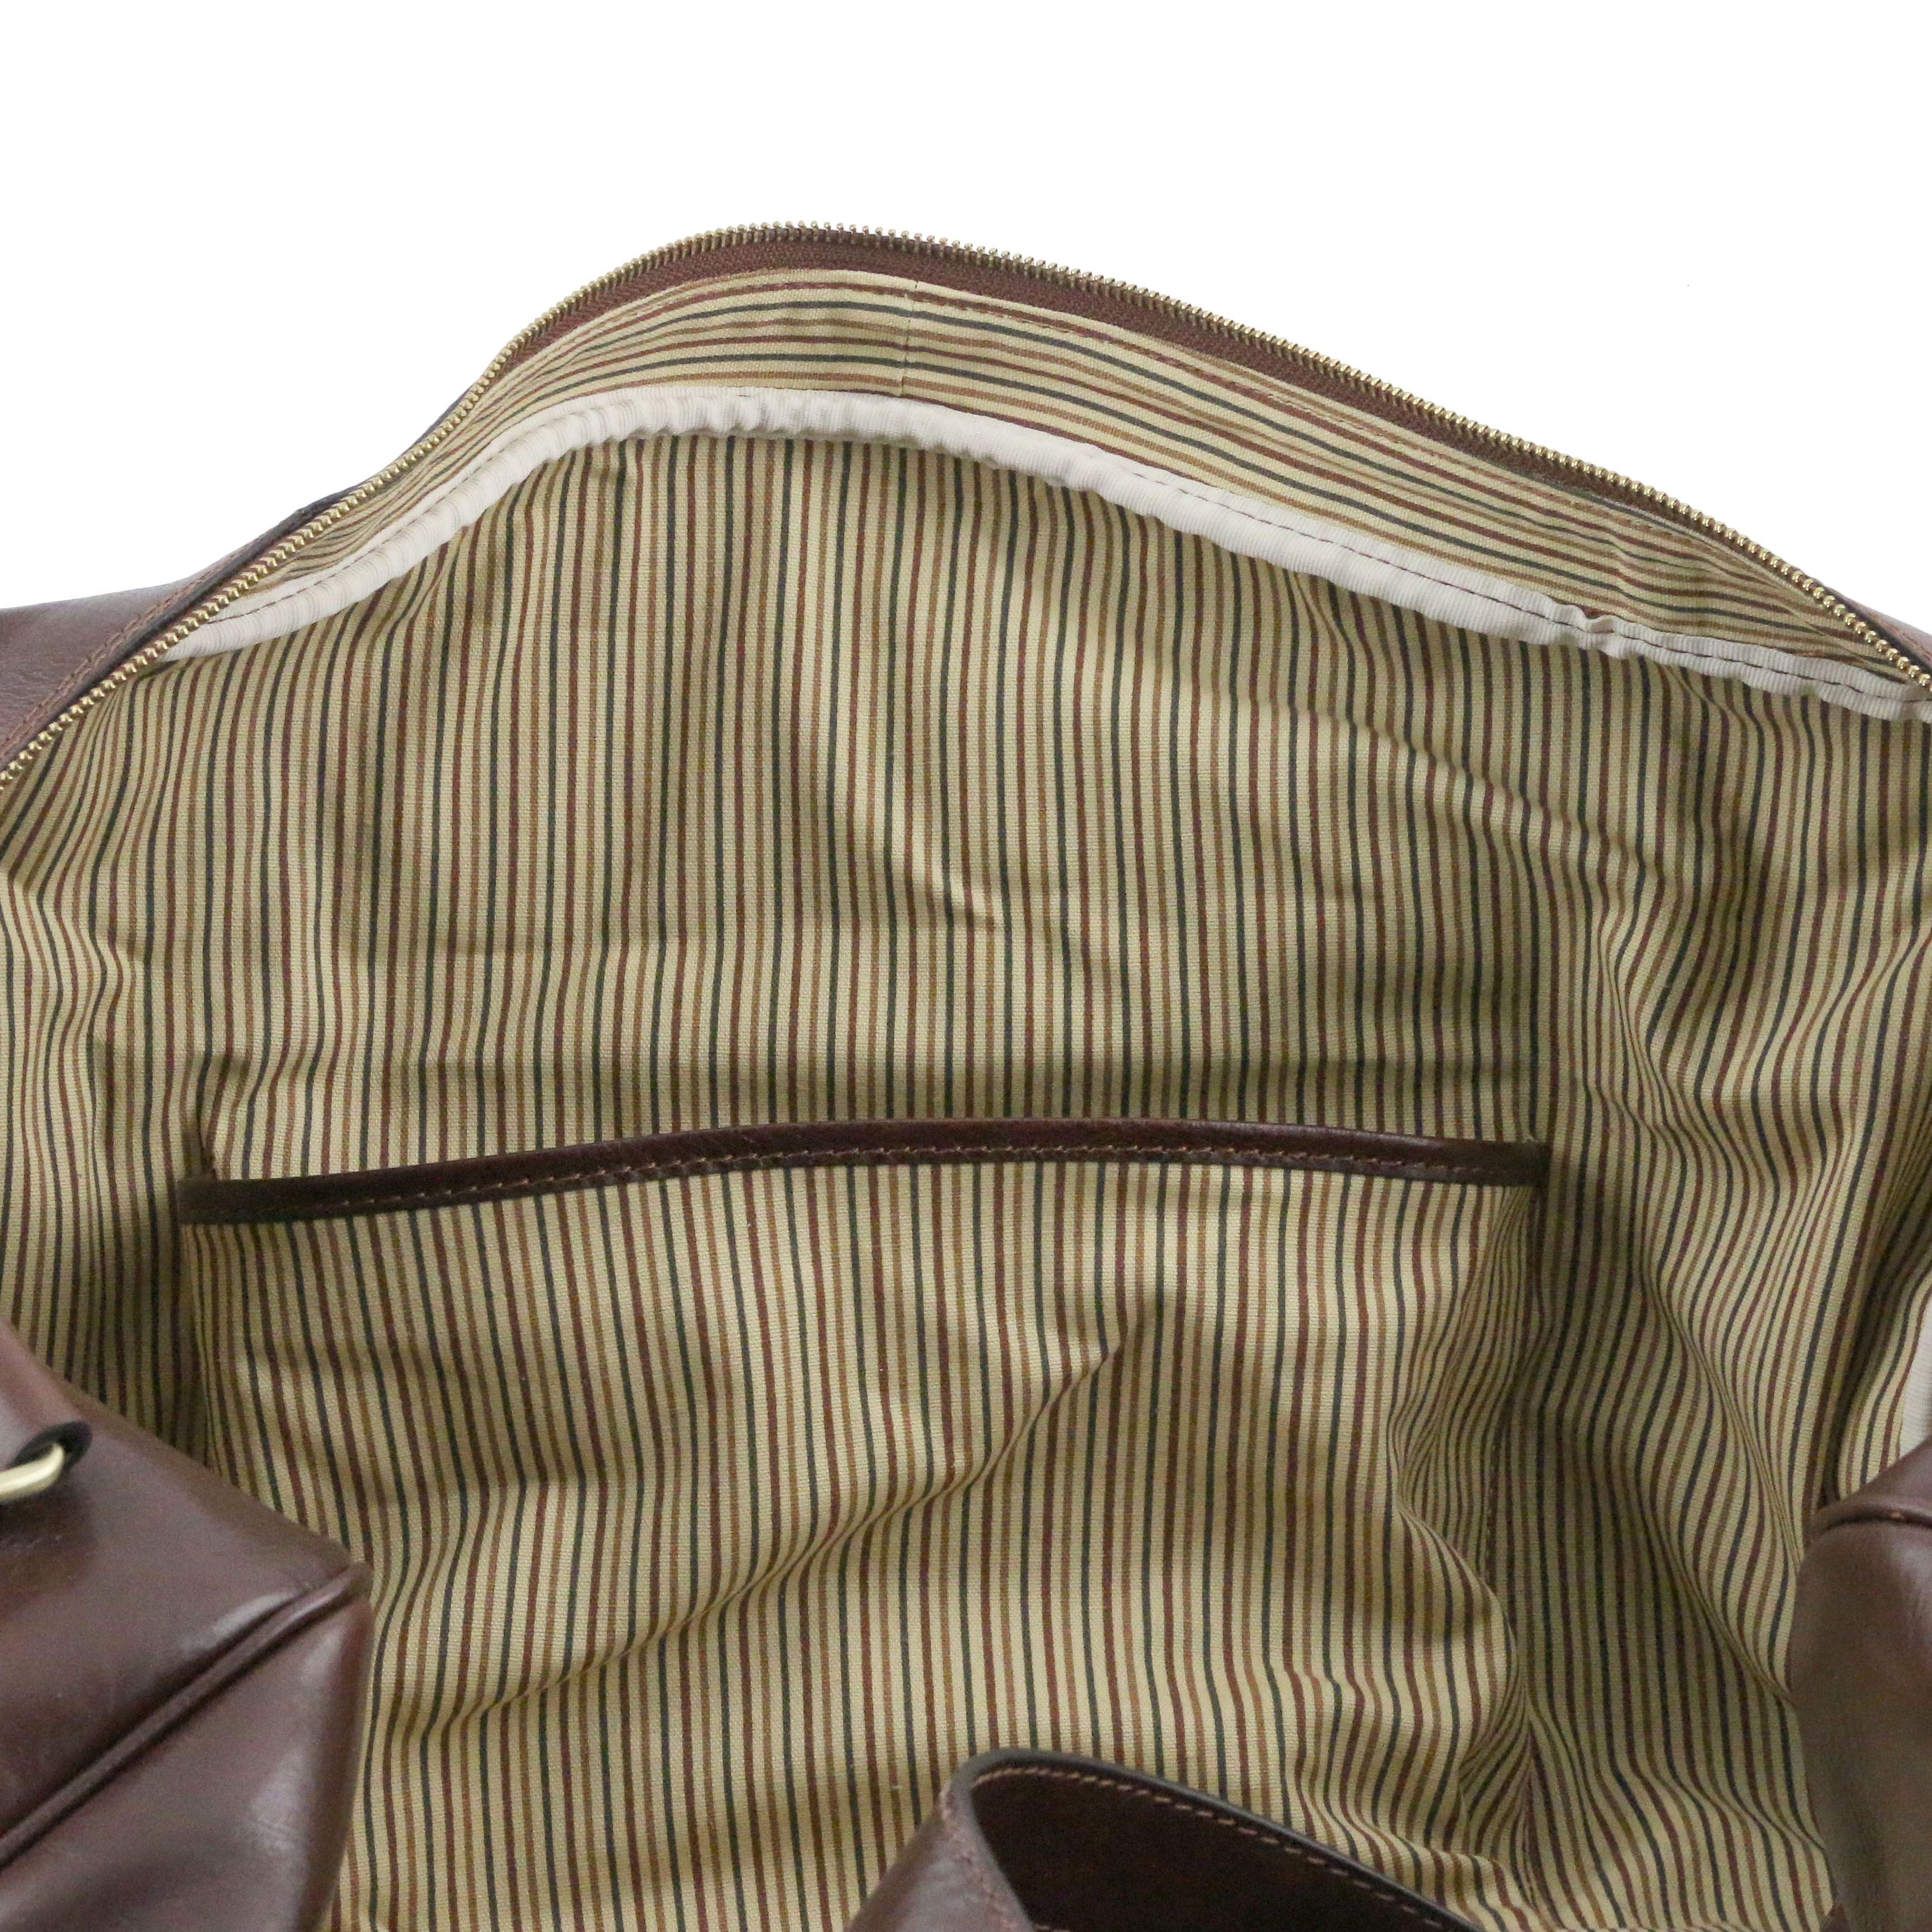 Tuscany Leather reistas TL Voyager groot formaat bruin binnenvakken